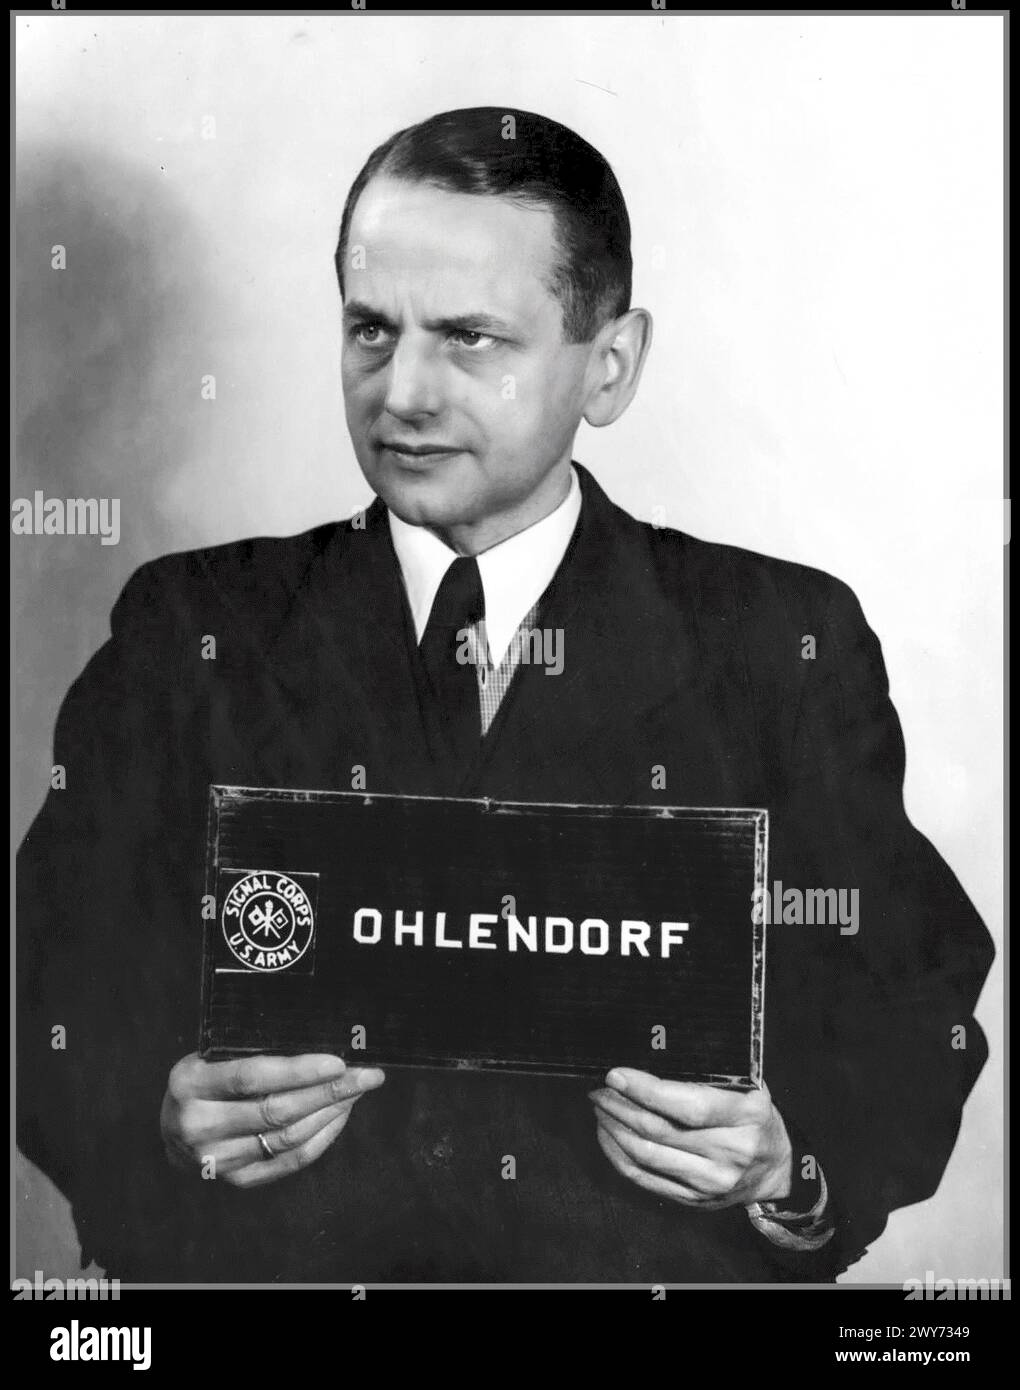 Der ehemalige SS-Gruppenführer Otto Ohlendorf (1907–1951) während der Nürnberger Einsatzgruppenprozesse. 1948 Otto Ohlendorf 4. Februar 1907 – 7. Juni 1951) war ein besonders abscheulicher deutscher SS-Funktionär und Holocaust-Täter während der NS-Zeit. Als Volkswirt war er Leiter des Sicherheitsdienstes (SD) Inland, zuständig für Geheimdienste und Sicherheit in Deutschland. 1941 ernannte Ohlendorf den Kommandeur der Einsatzgruppe D, die Massenmorde in Moldau, der Südukraine, der Krim und 1942 im Nordkaukasus begangen hatte. 1951 wurde er durch Hängen verurteilt und hingerichtet Stockfoto